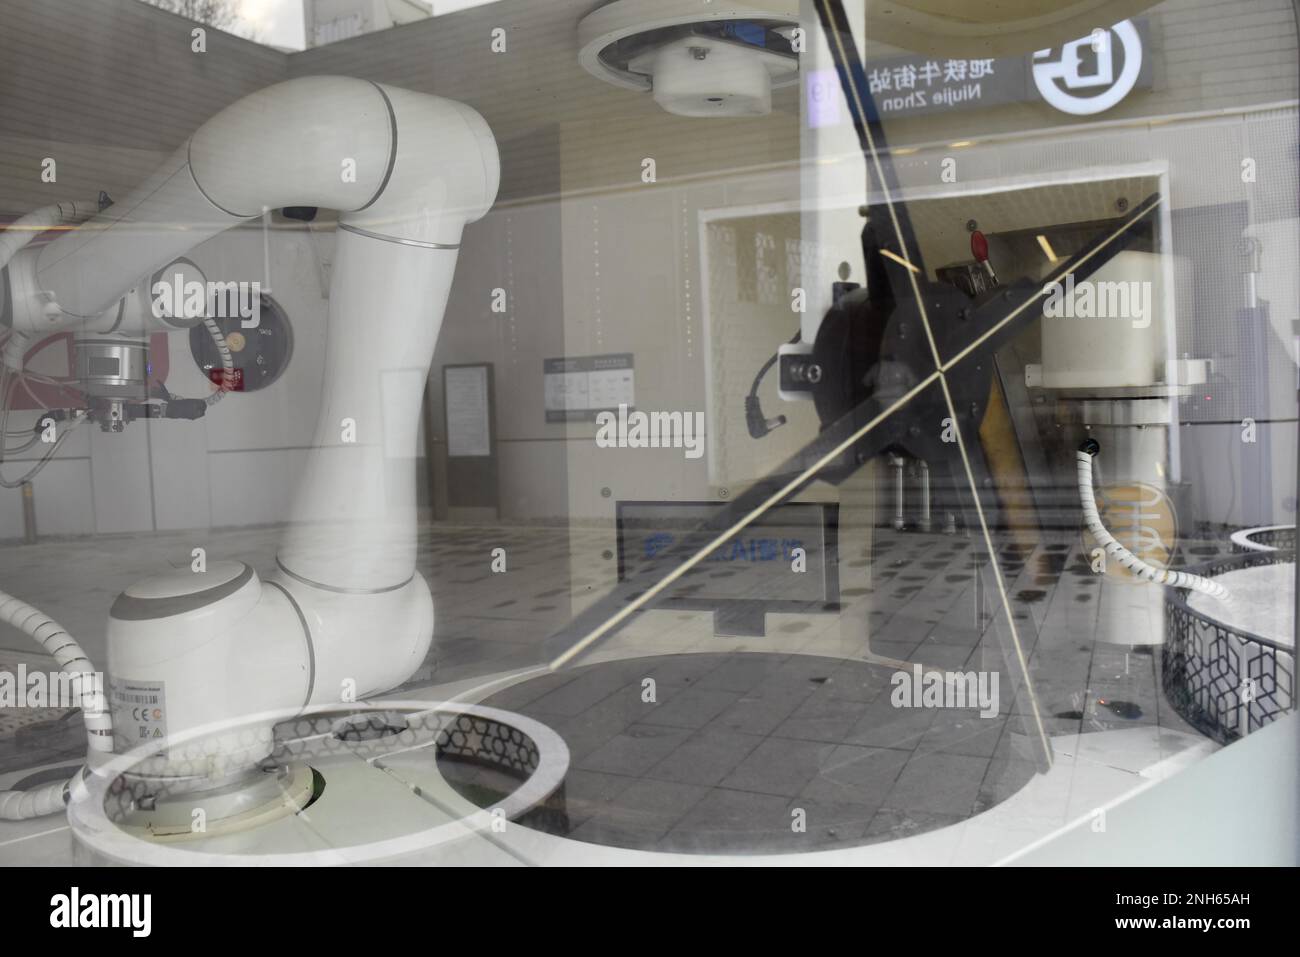 Un robot para hacer guozi jianbing, una especie de panqueque relleno,  aparece a la salida de la estación de metro de Niujie, atrayendo a muchos  ciudadanos a la experiencia, Beijing, China, 19